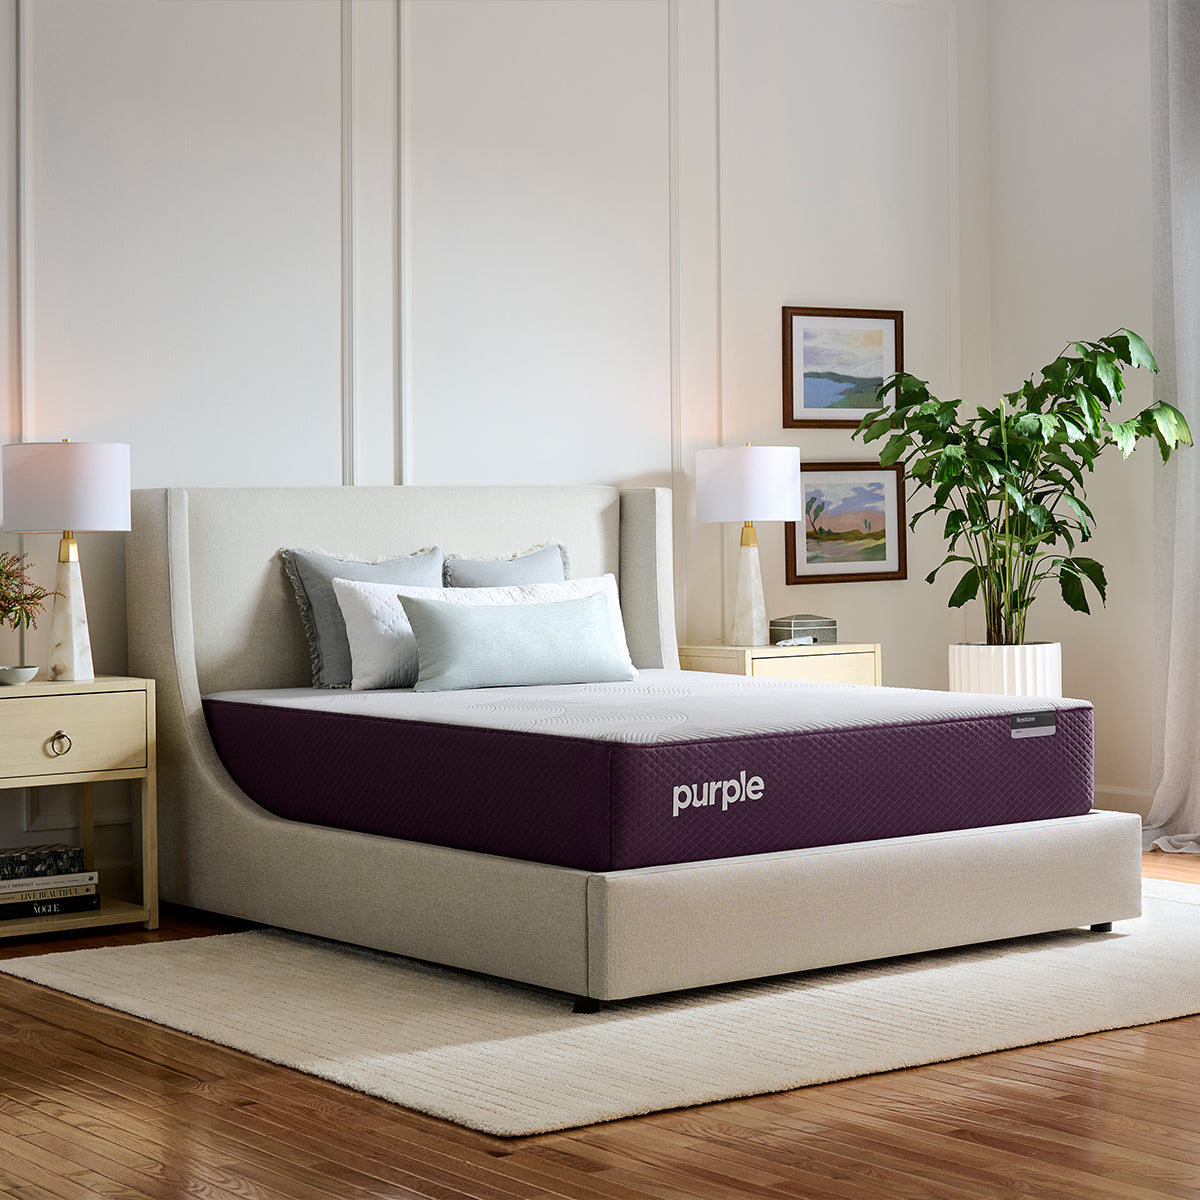 Purple Restore Firm Mattress in bedroom